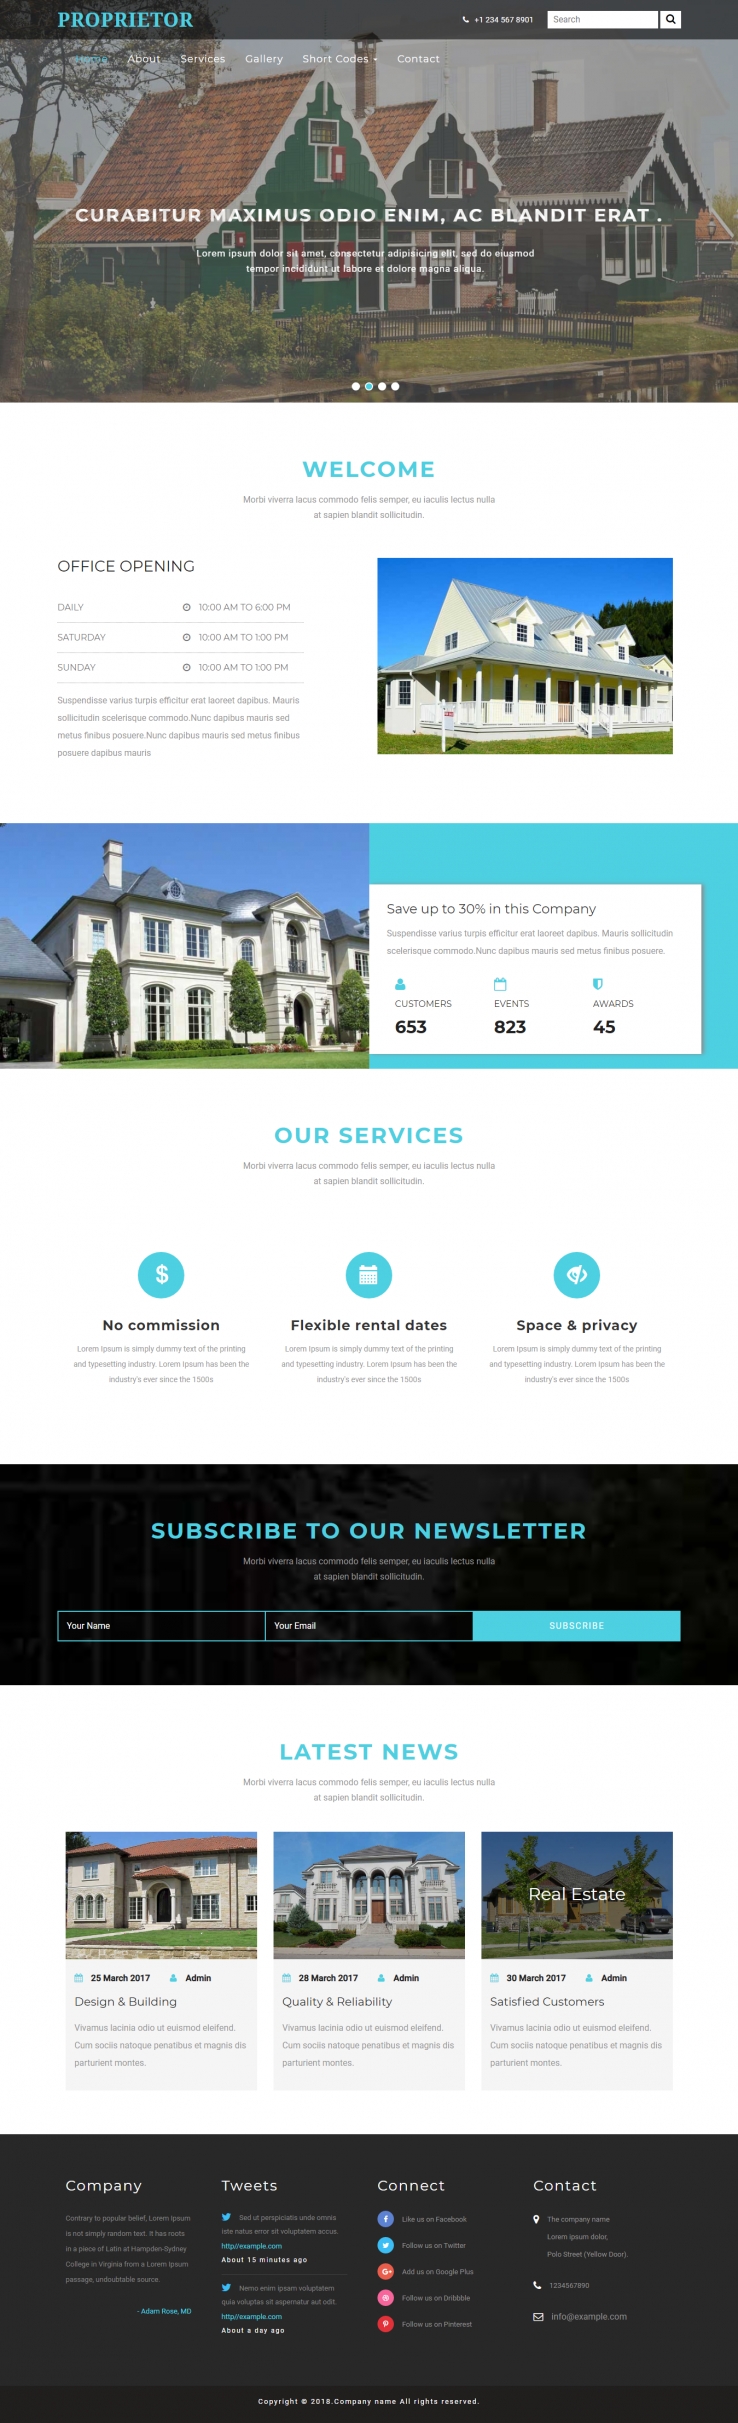 蓝色宽屏风格的别墅房产出租企业网站源码下载